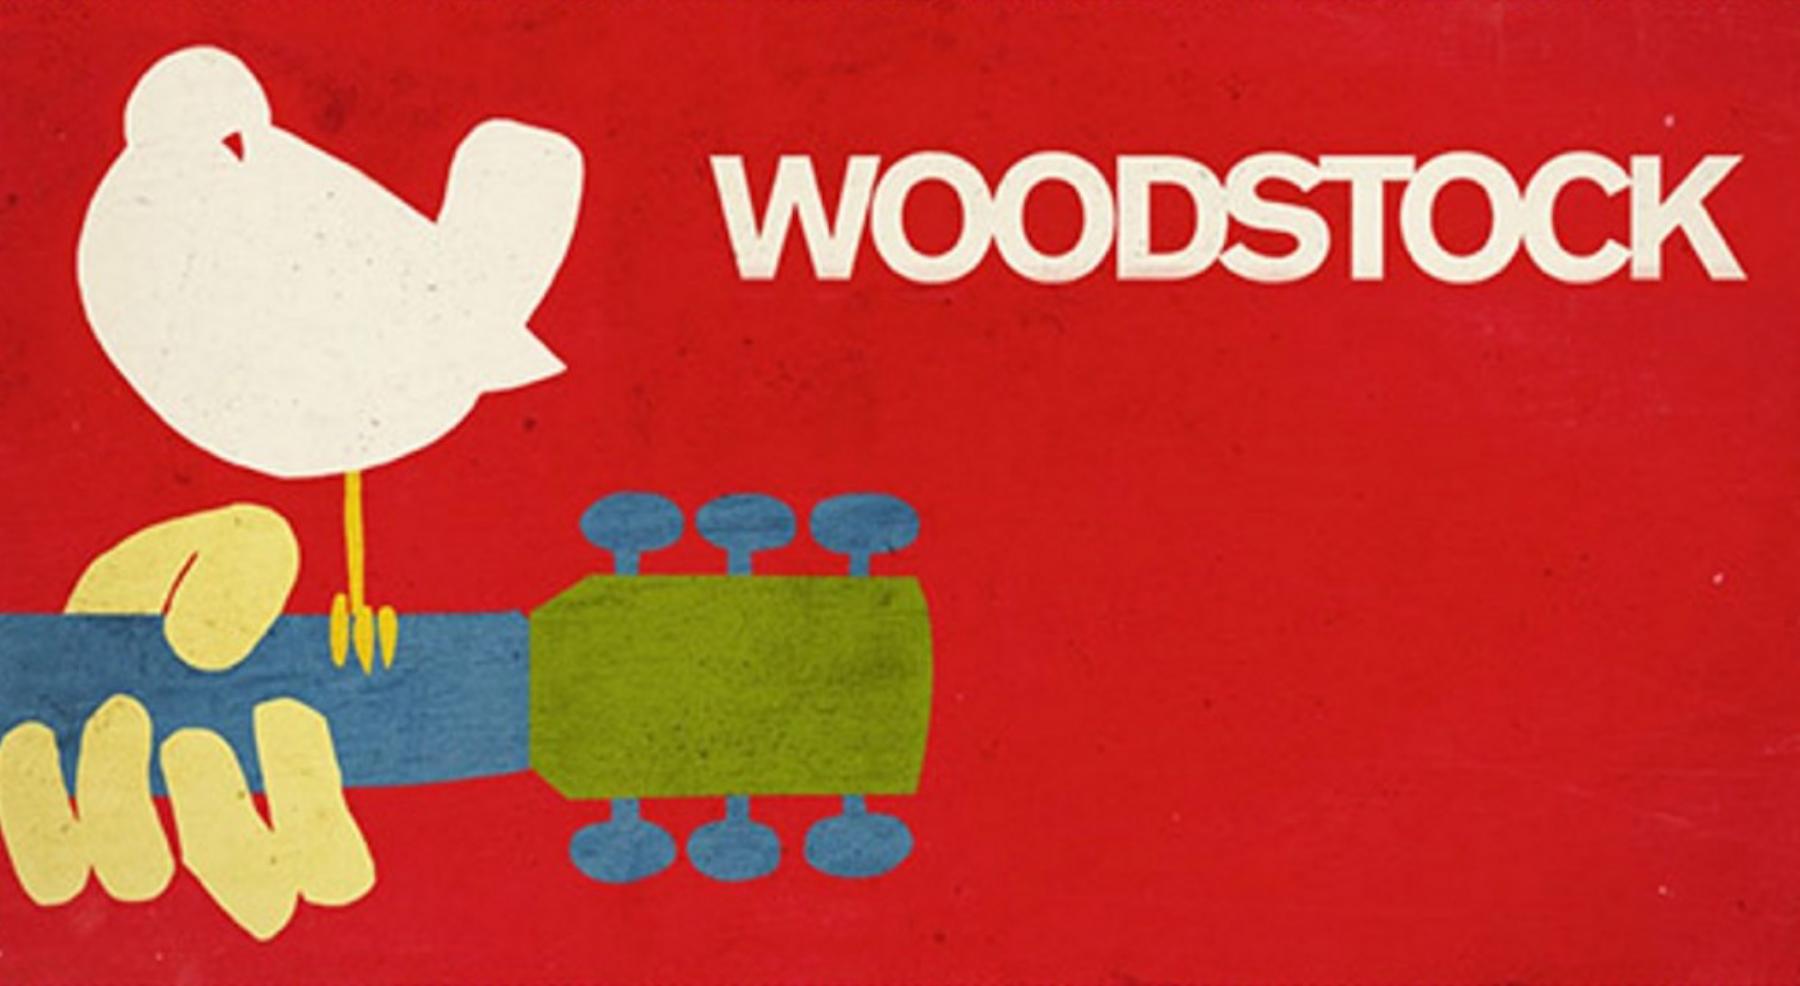 woodstock-2019-abgesagt